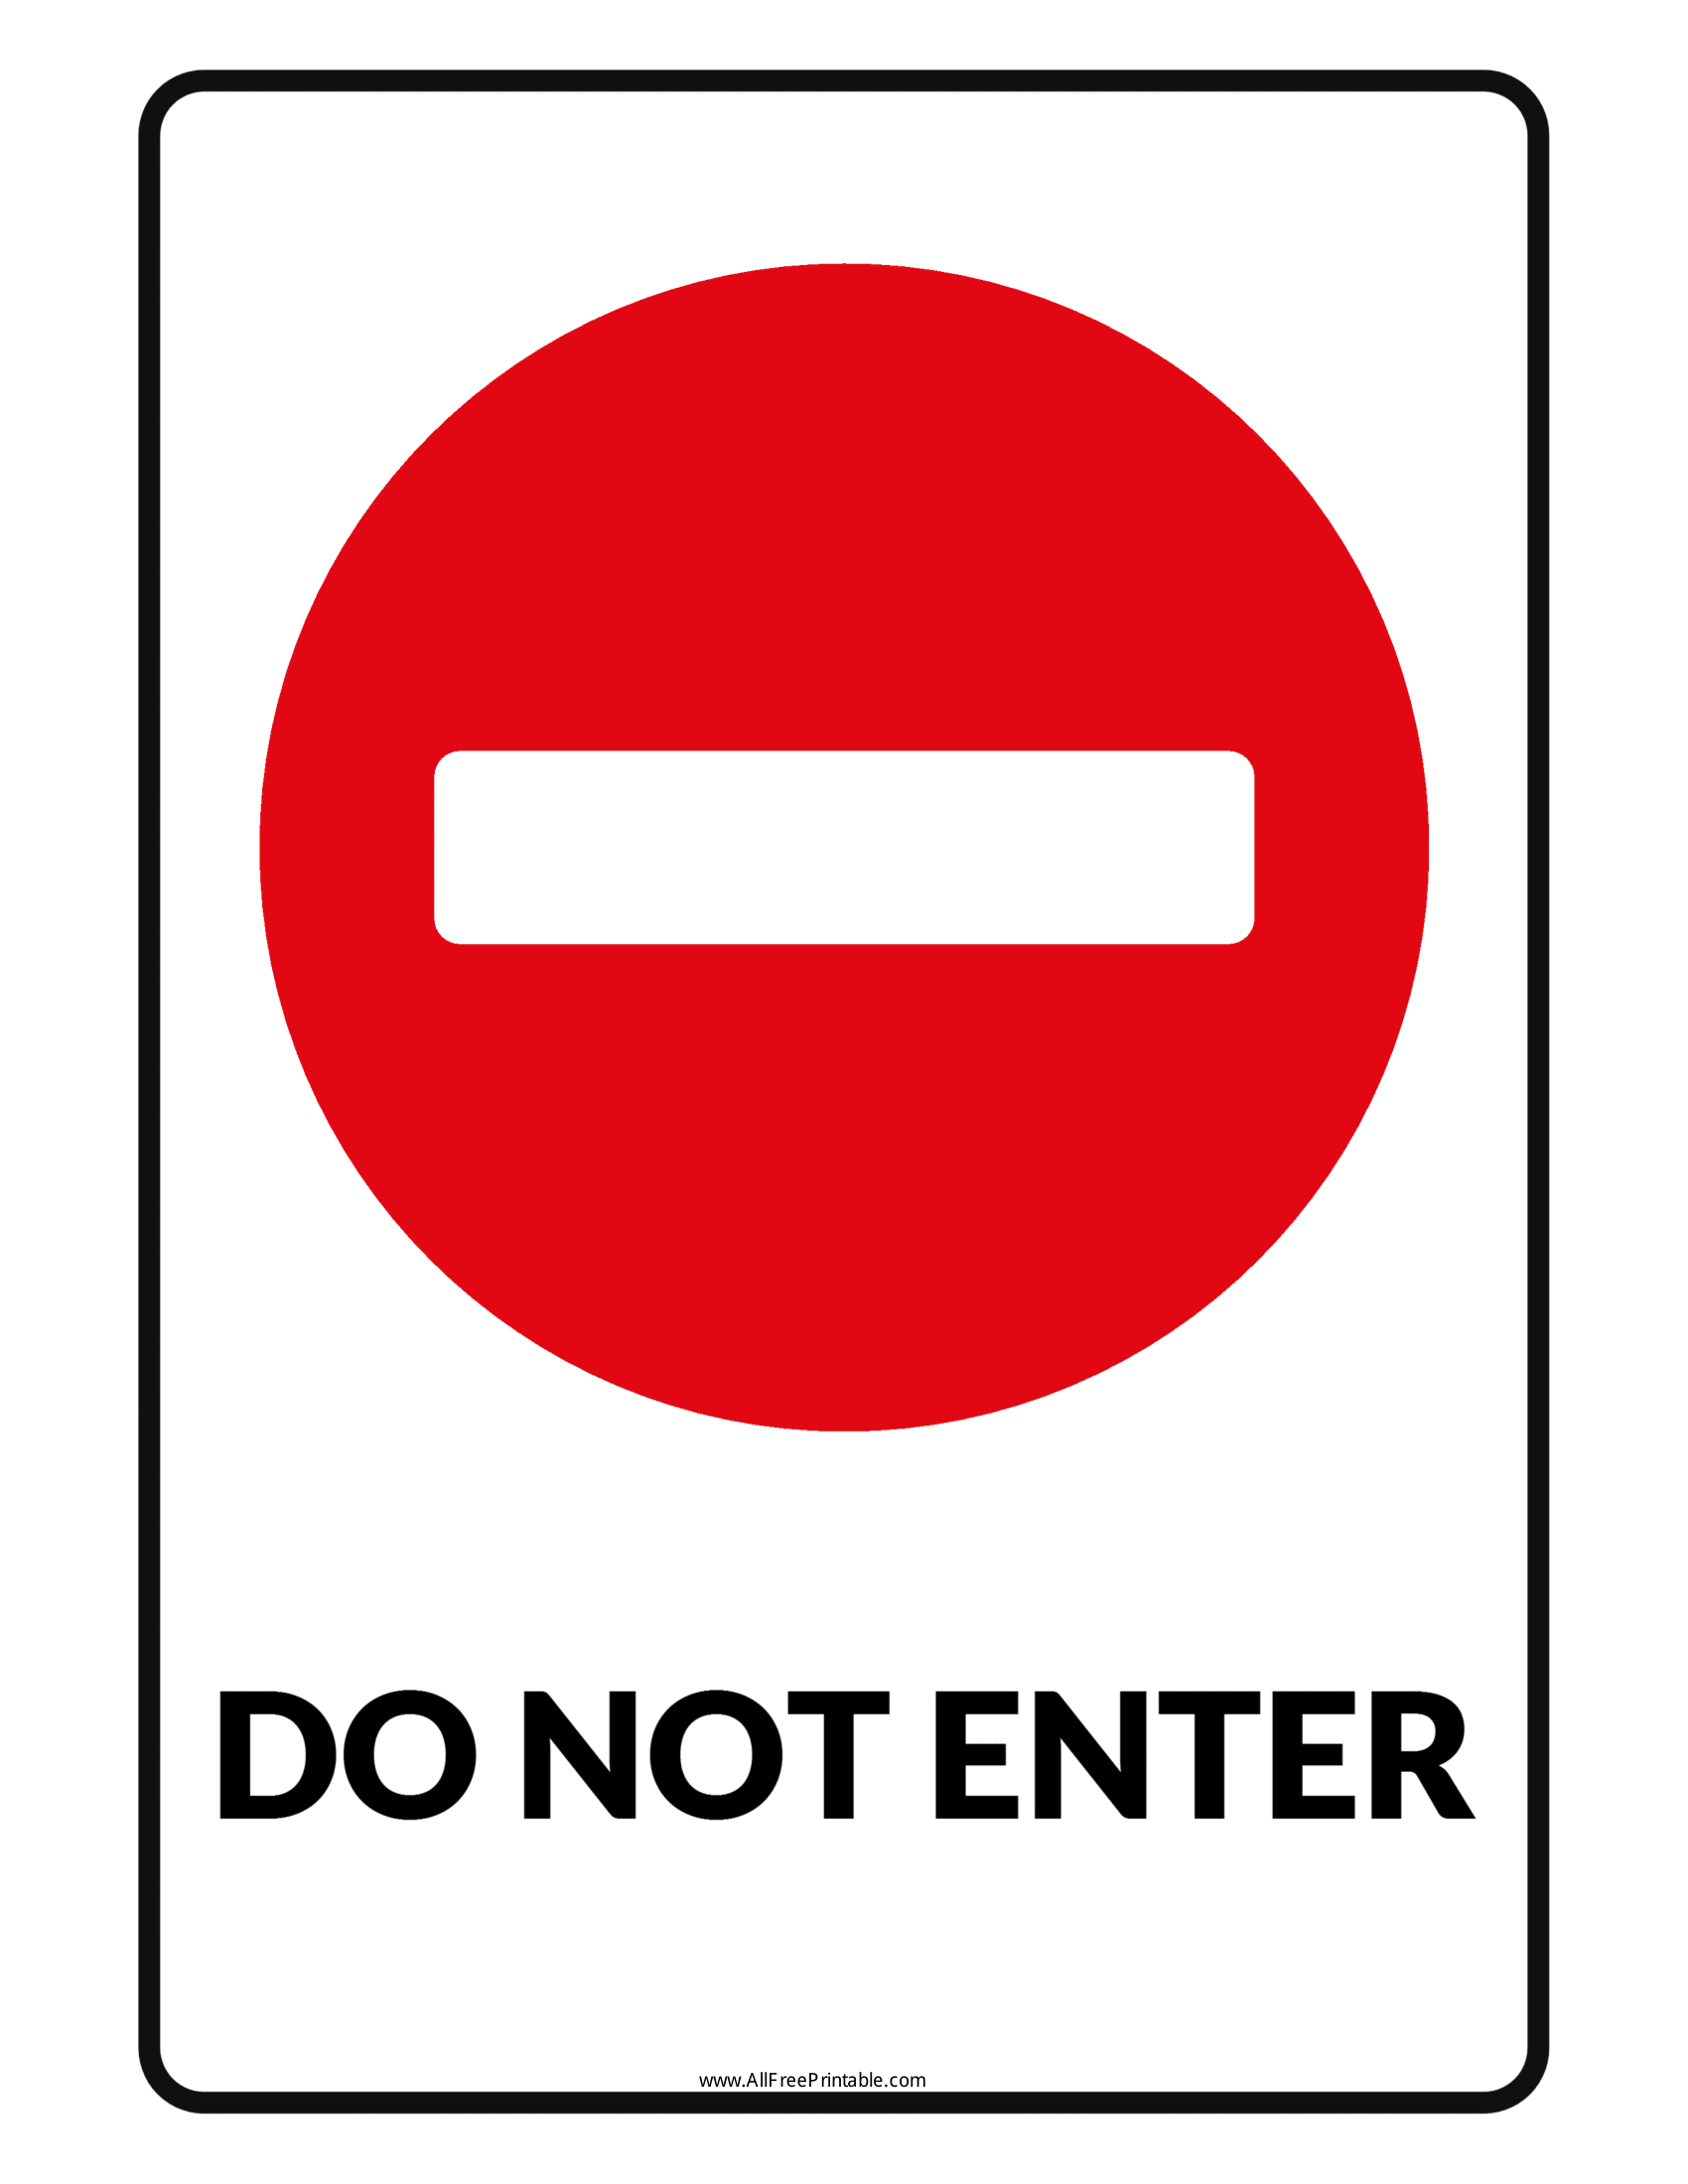 Could not enter. Do not enter. Во not enter. Знак enter. Do not enter значок.